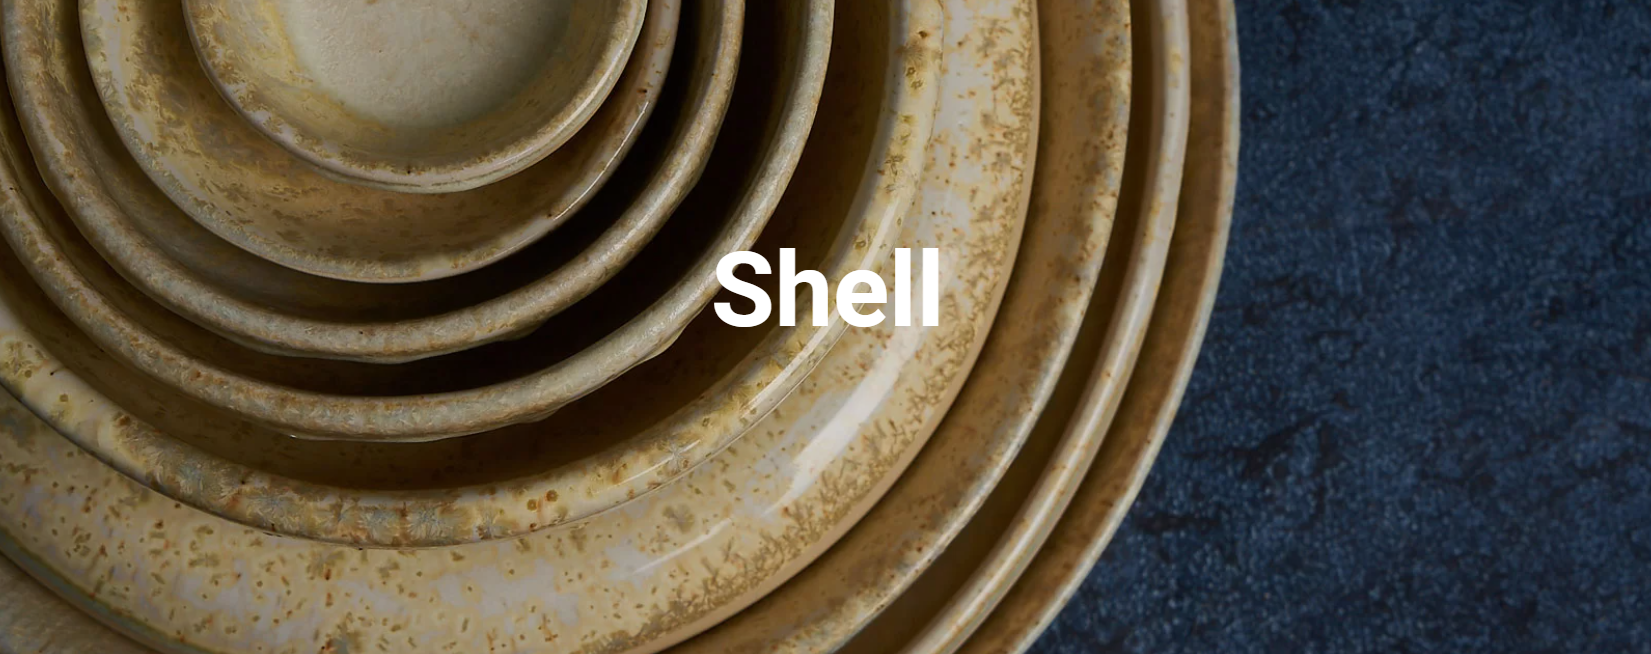 Качественная керамическая посуда ручной работы ClayVille Ceramics (Россия) серии Shell бежевая с жёлтым